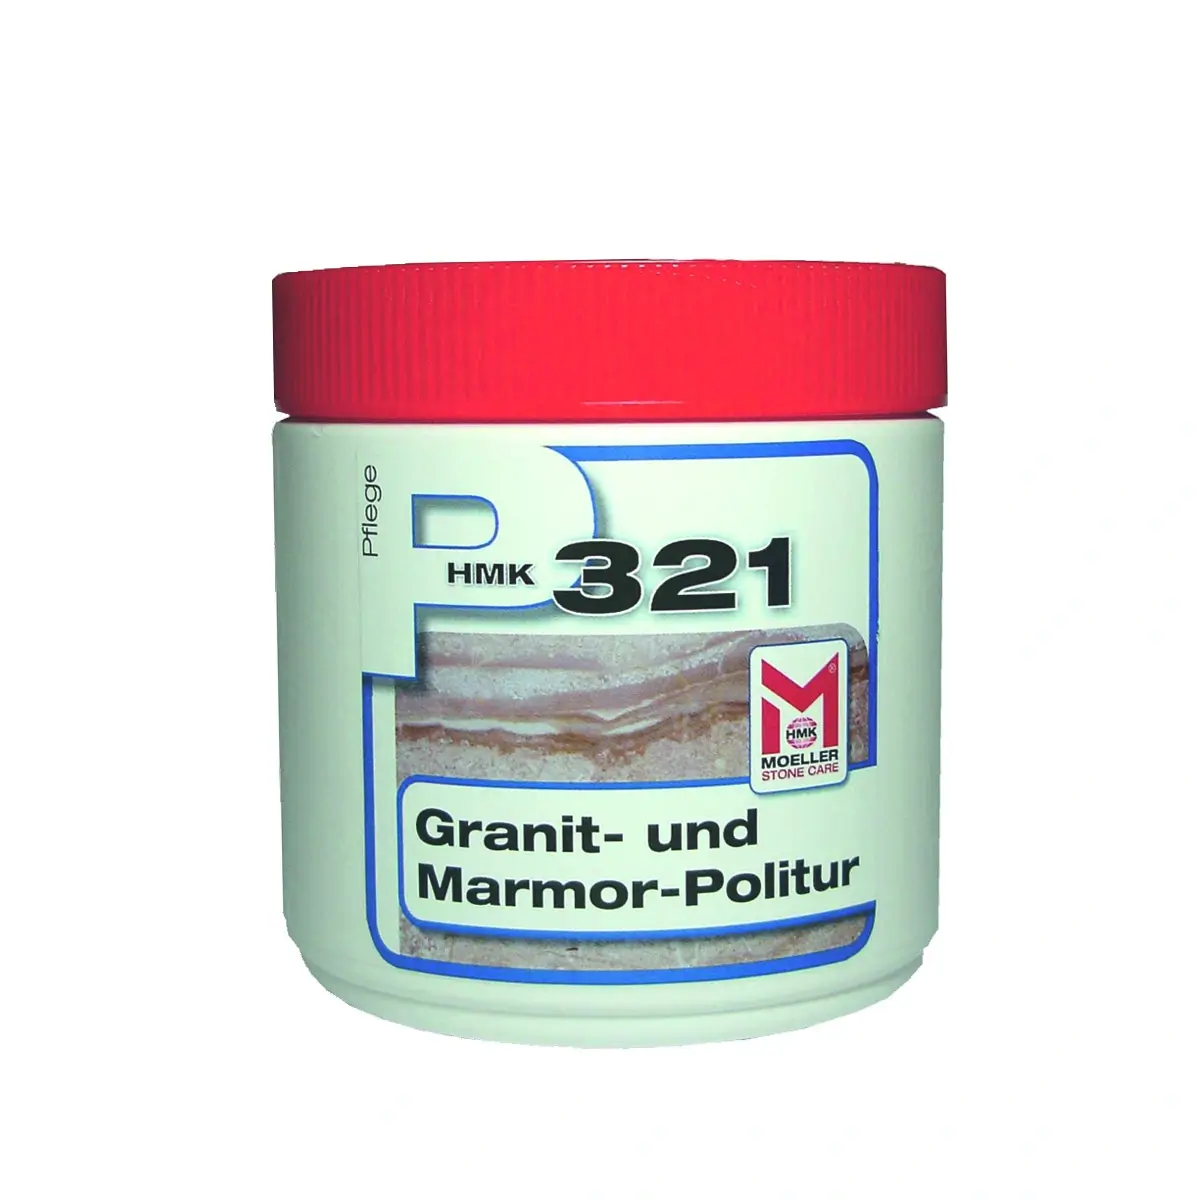 HMK P321 Granitpolitur & Marmorpolitur 500ml